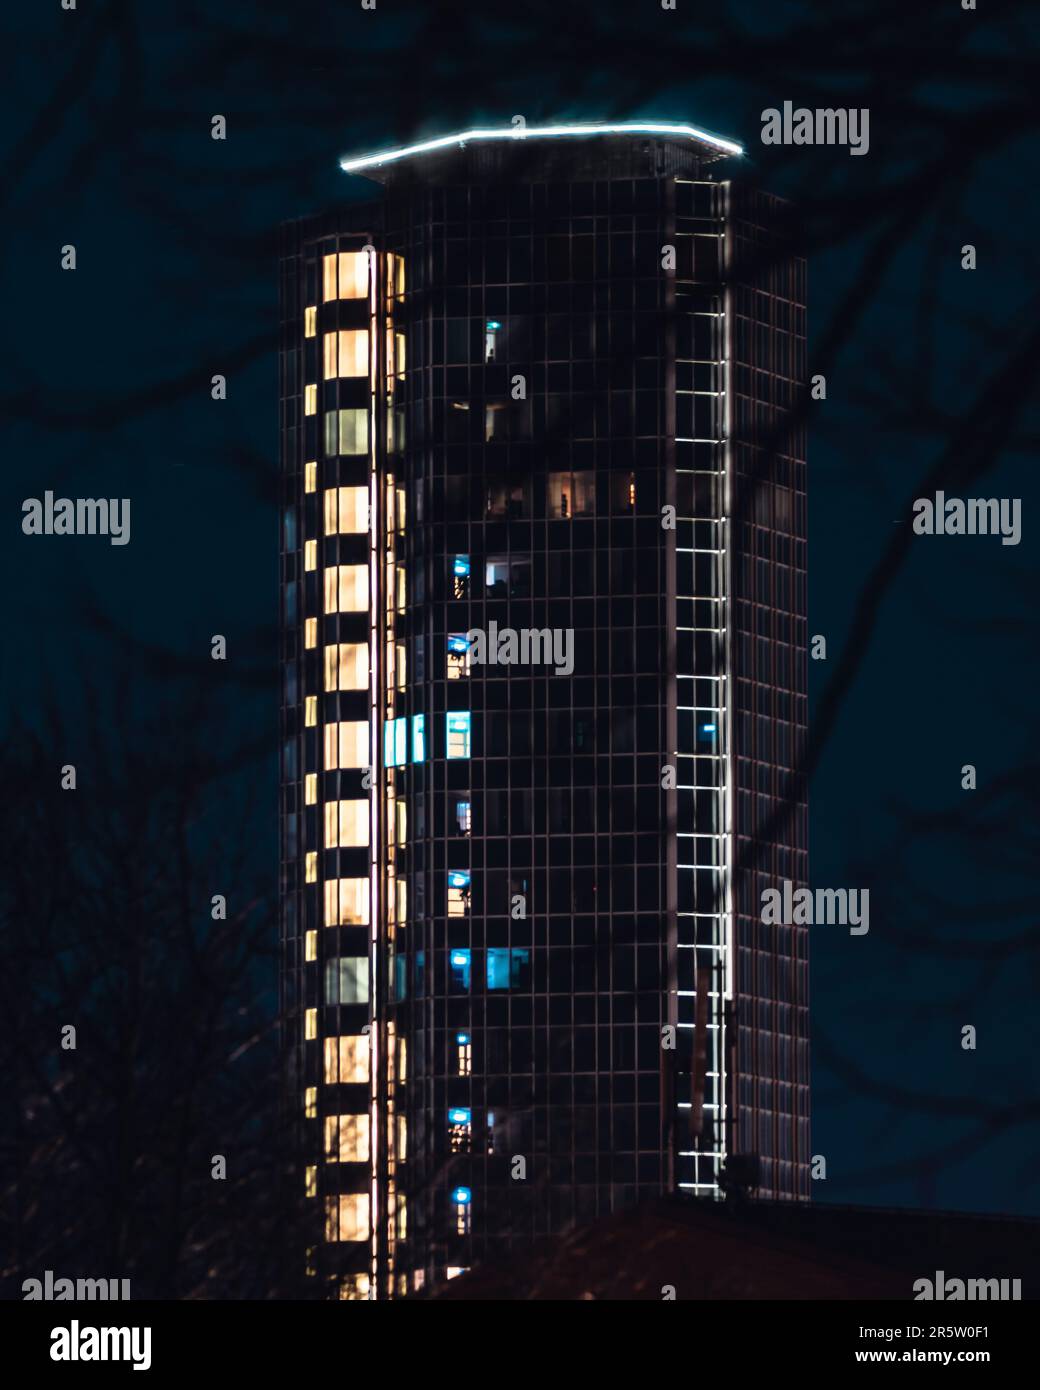 Ein Hochhaus, beleuchtet in einem lebendigen blauen Licht, teilweise von Bäumen in einer nächtlichen Umgebung verdeckt Stockfoto